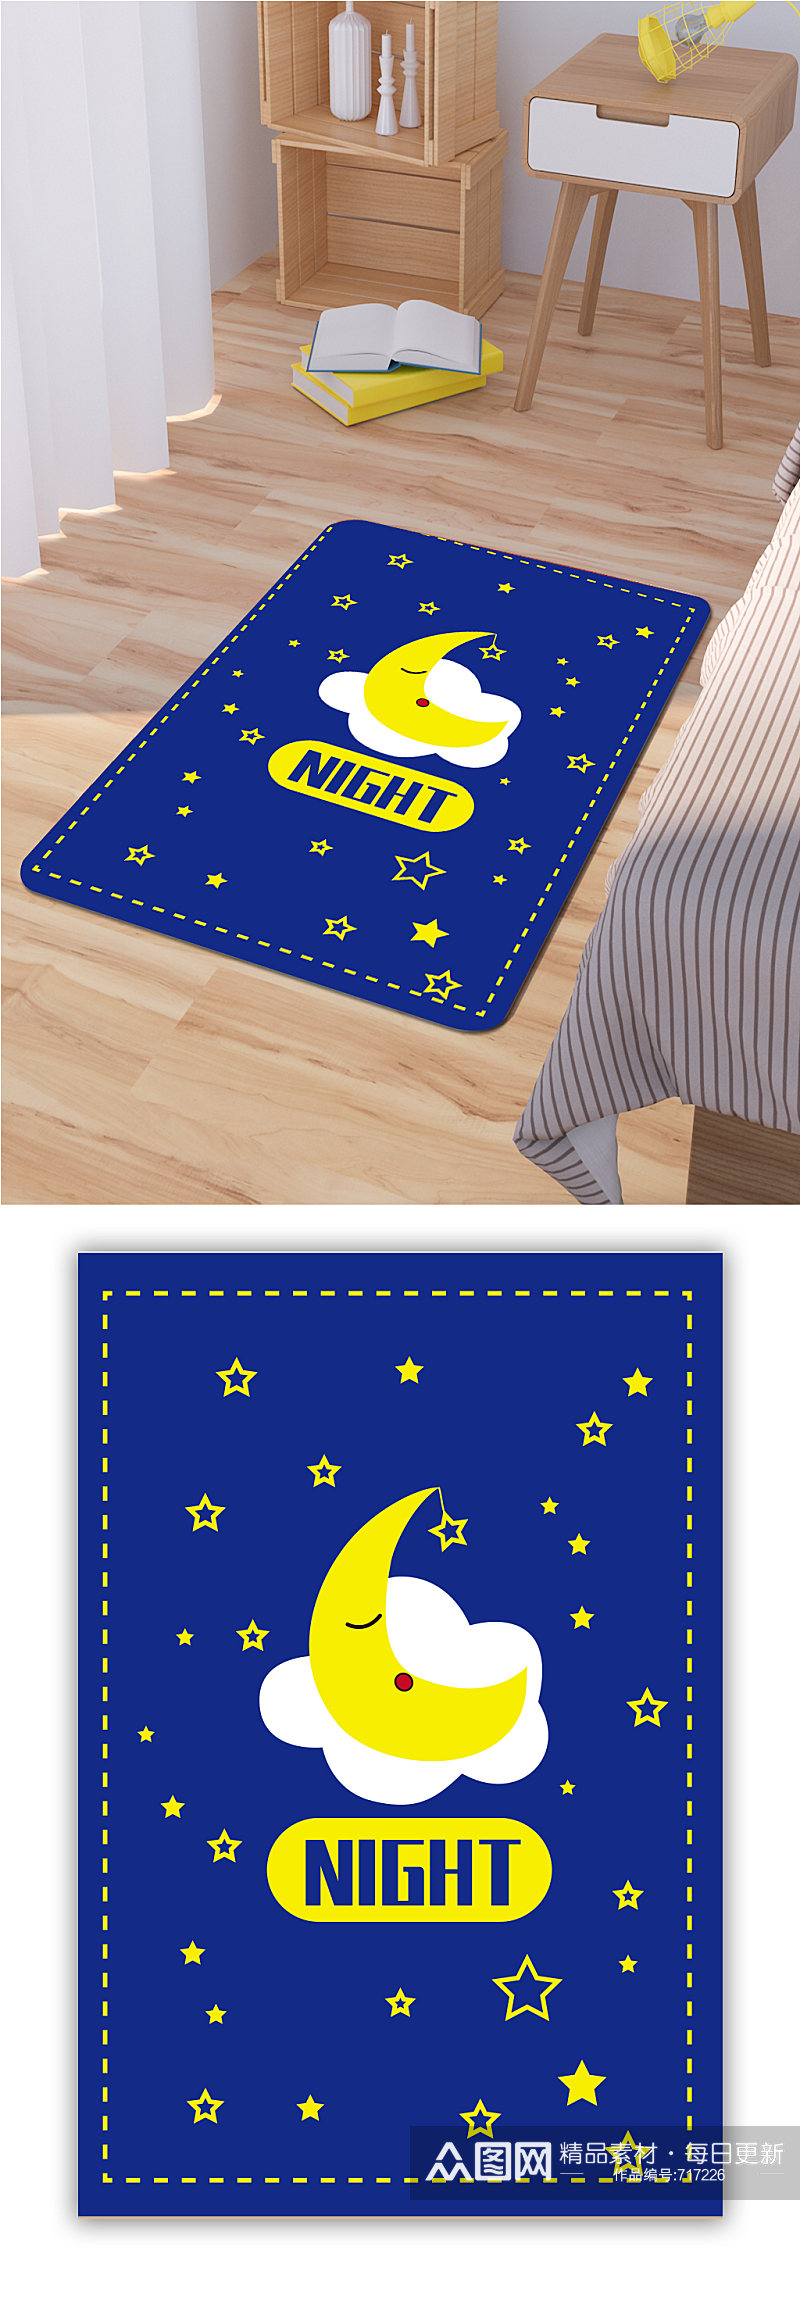 北欧风格地毯月亮星星图案素材